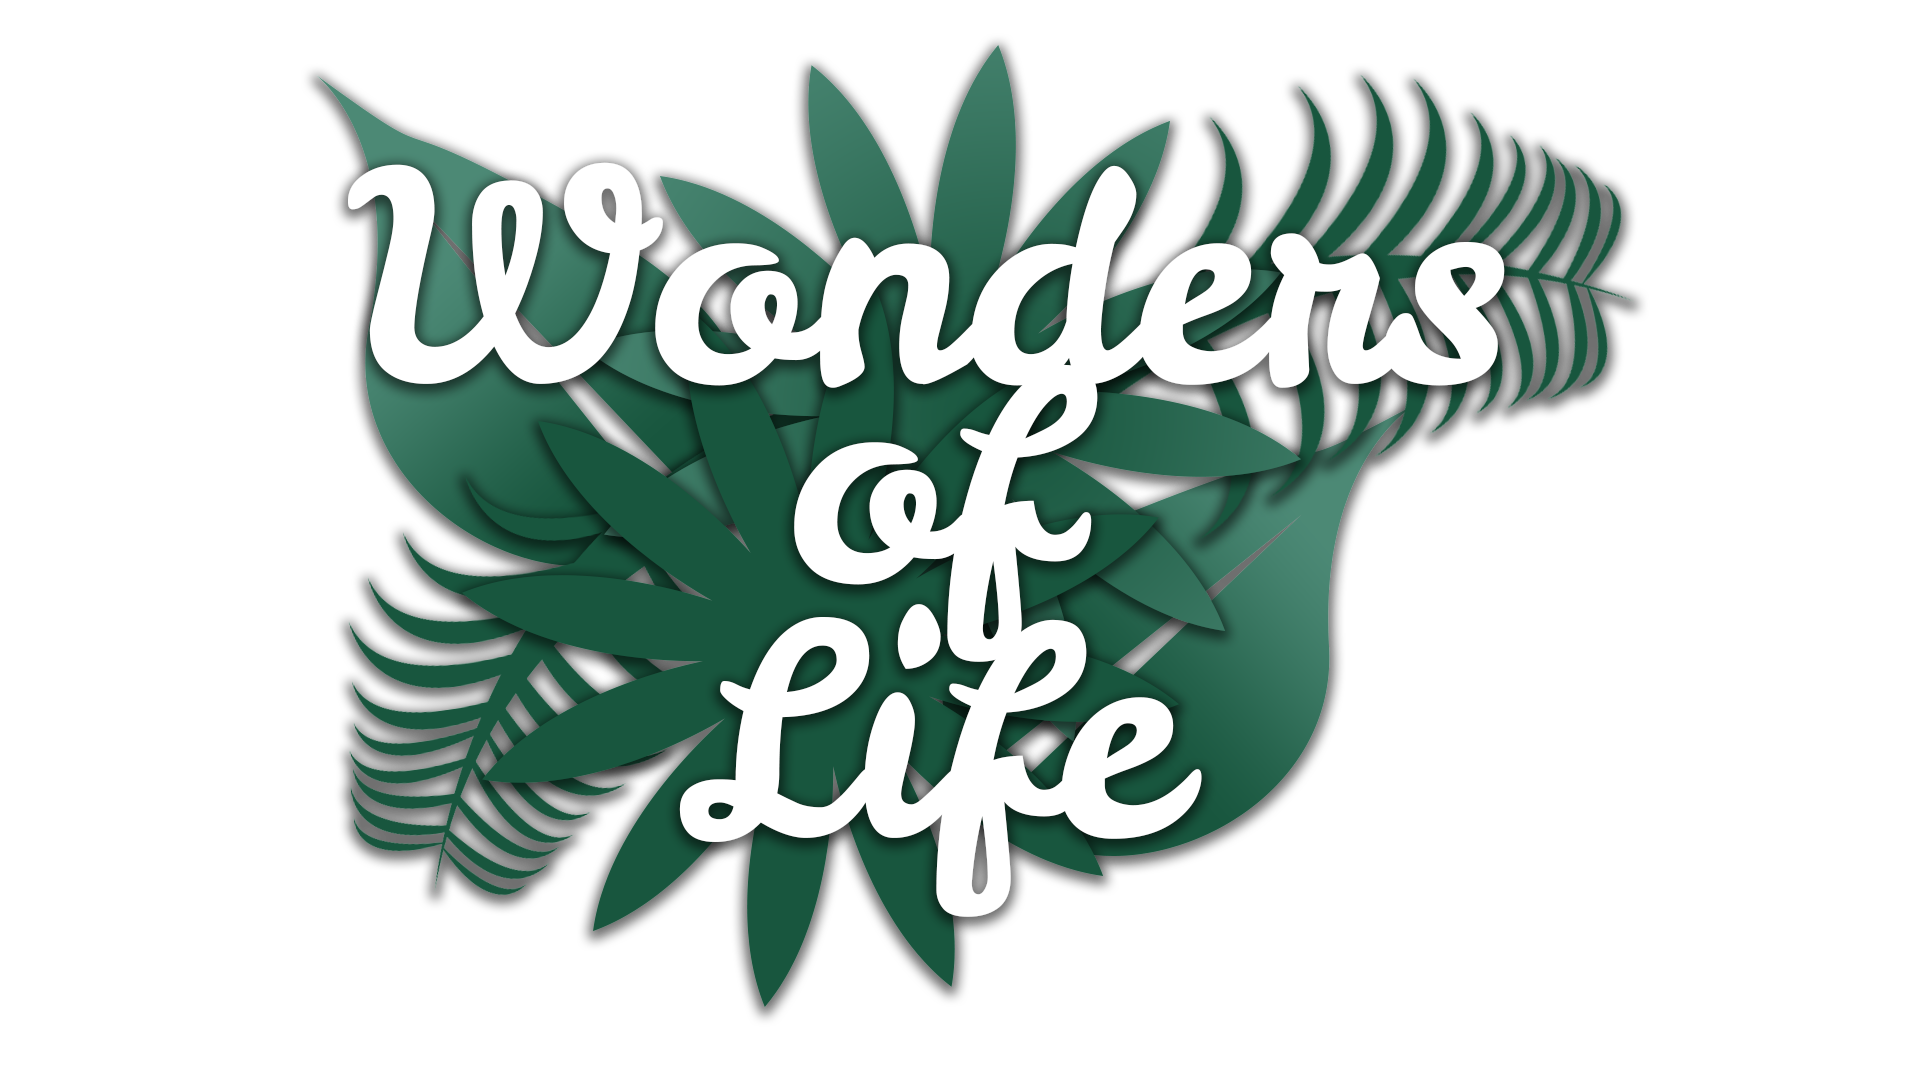 Wonders of Life